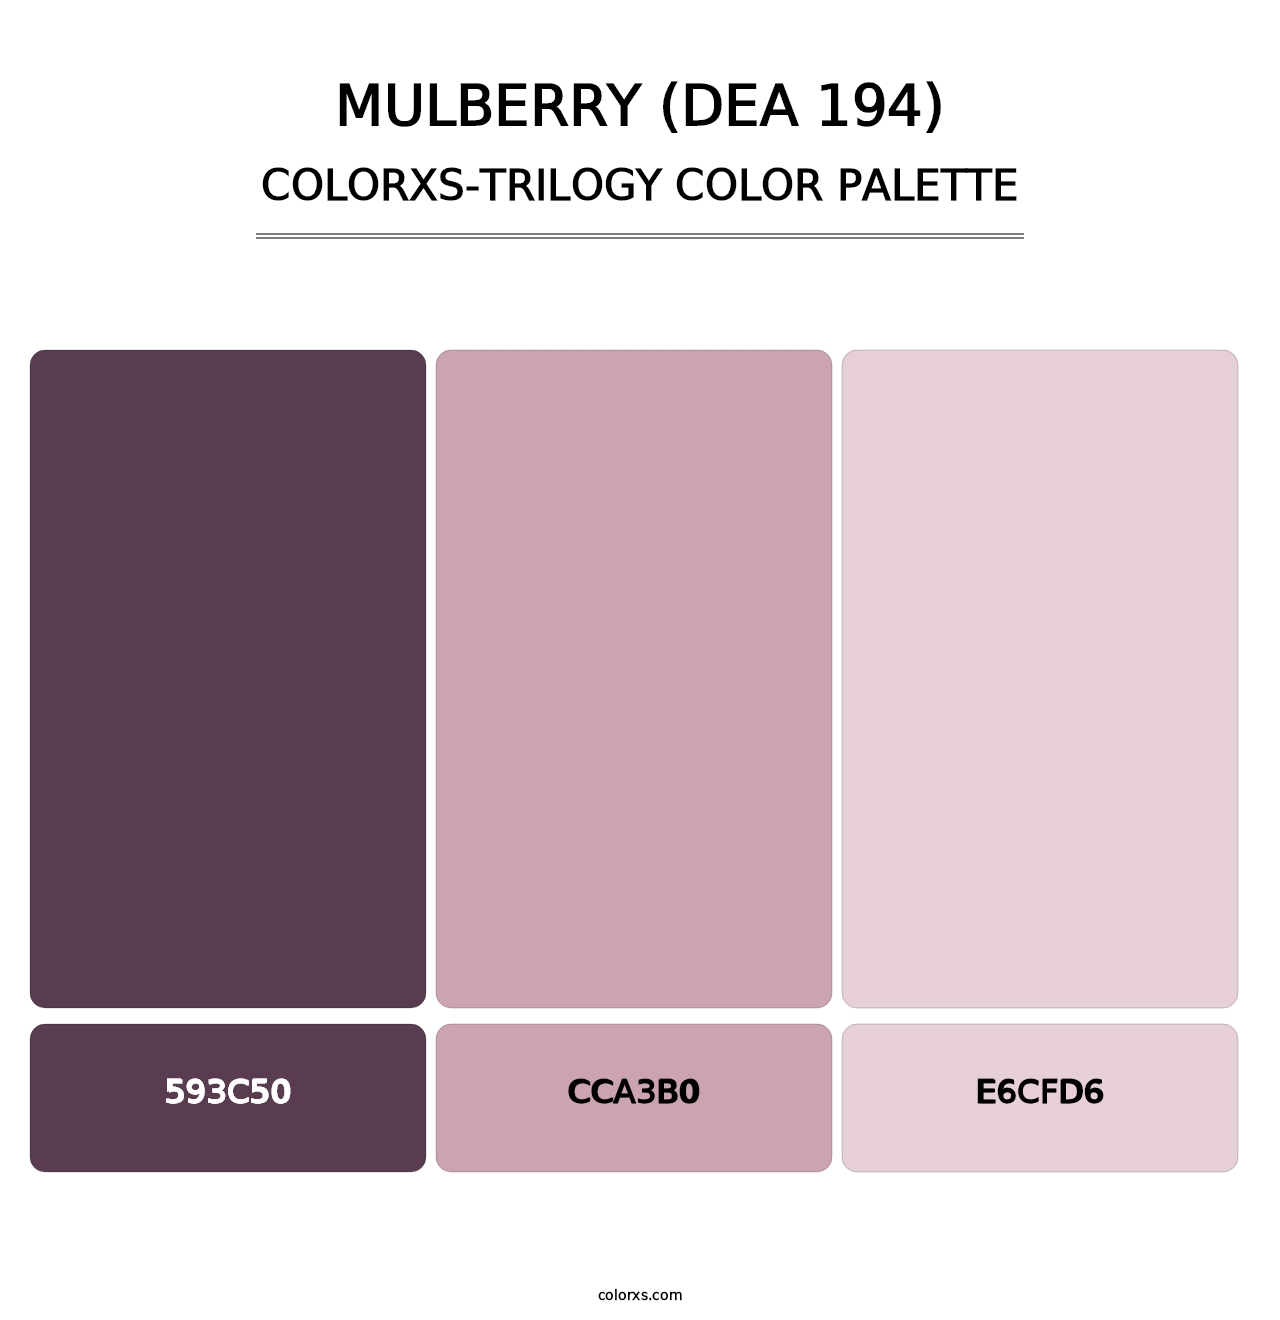 Mulberry (DEA 194) - Colorxs Trilogy Palette